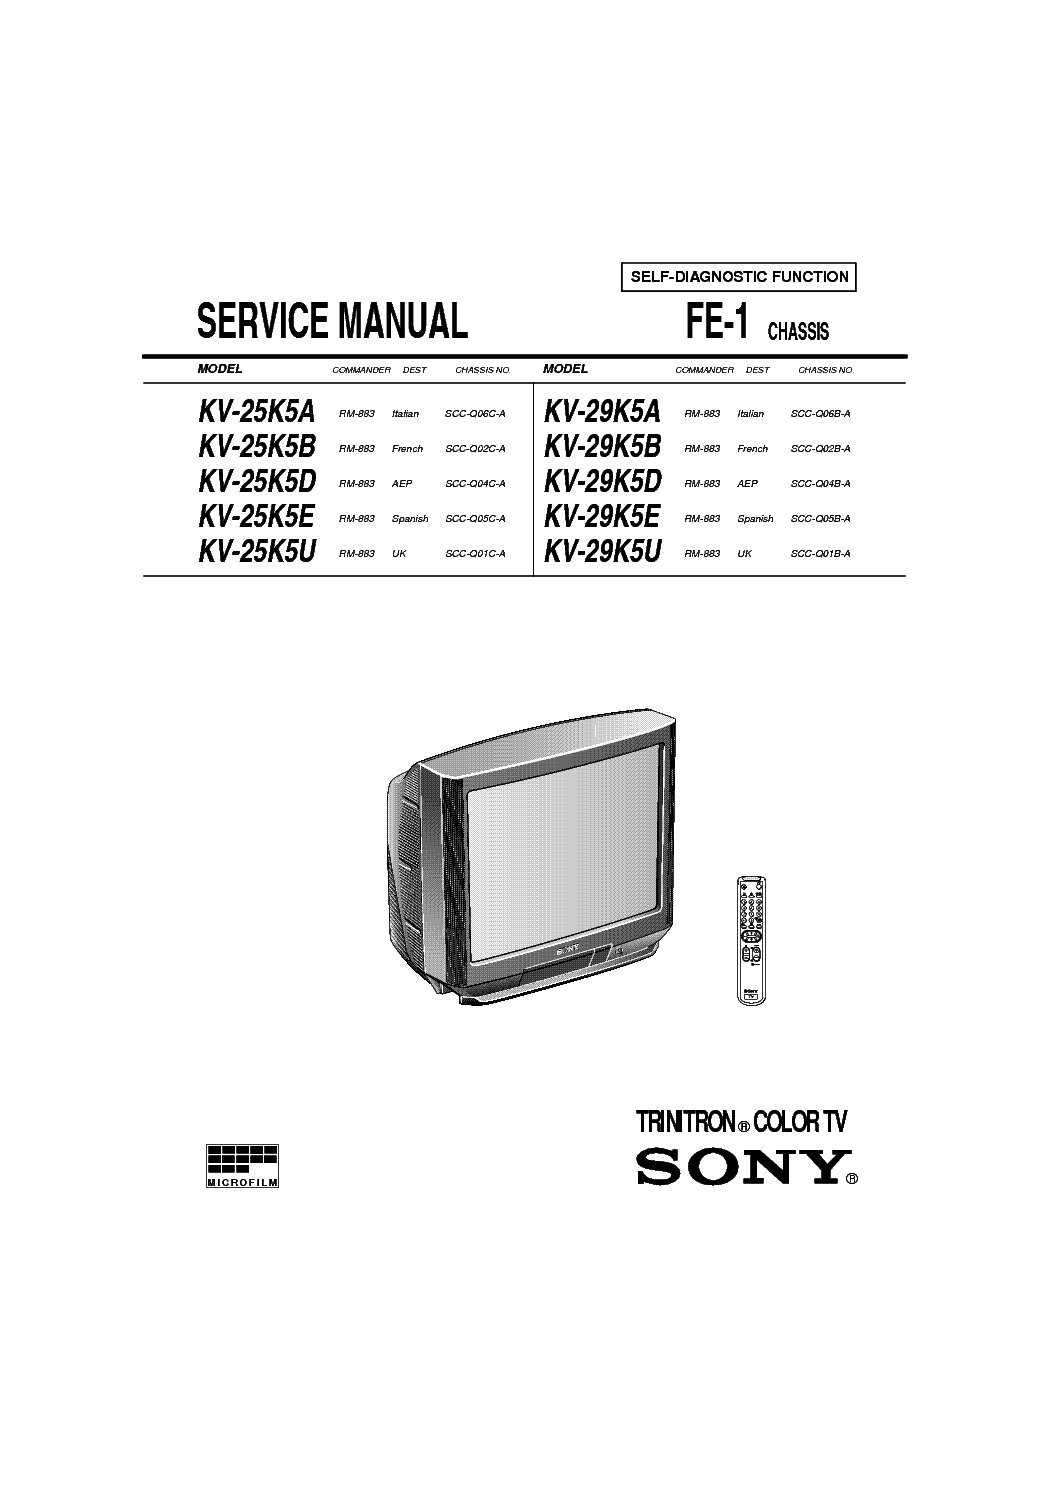 SONY KV-25K5,29K5 CH FE1 service manual (1st page)